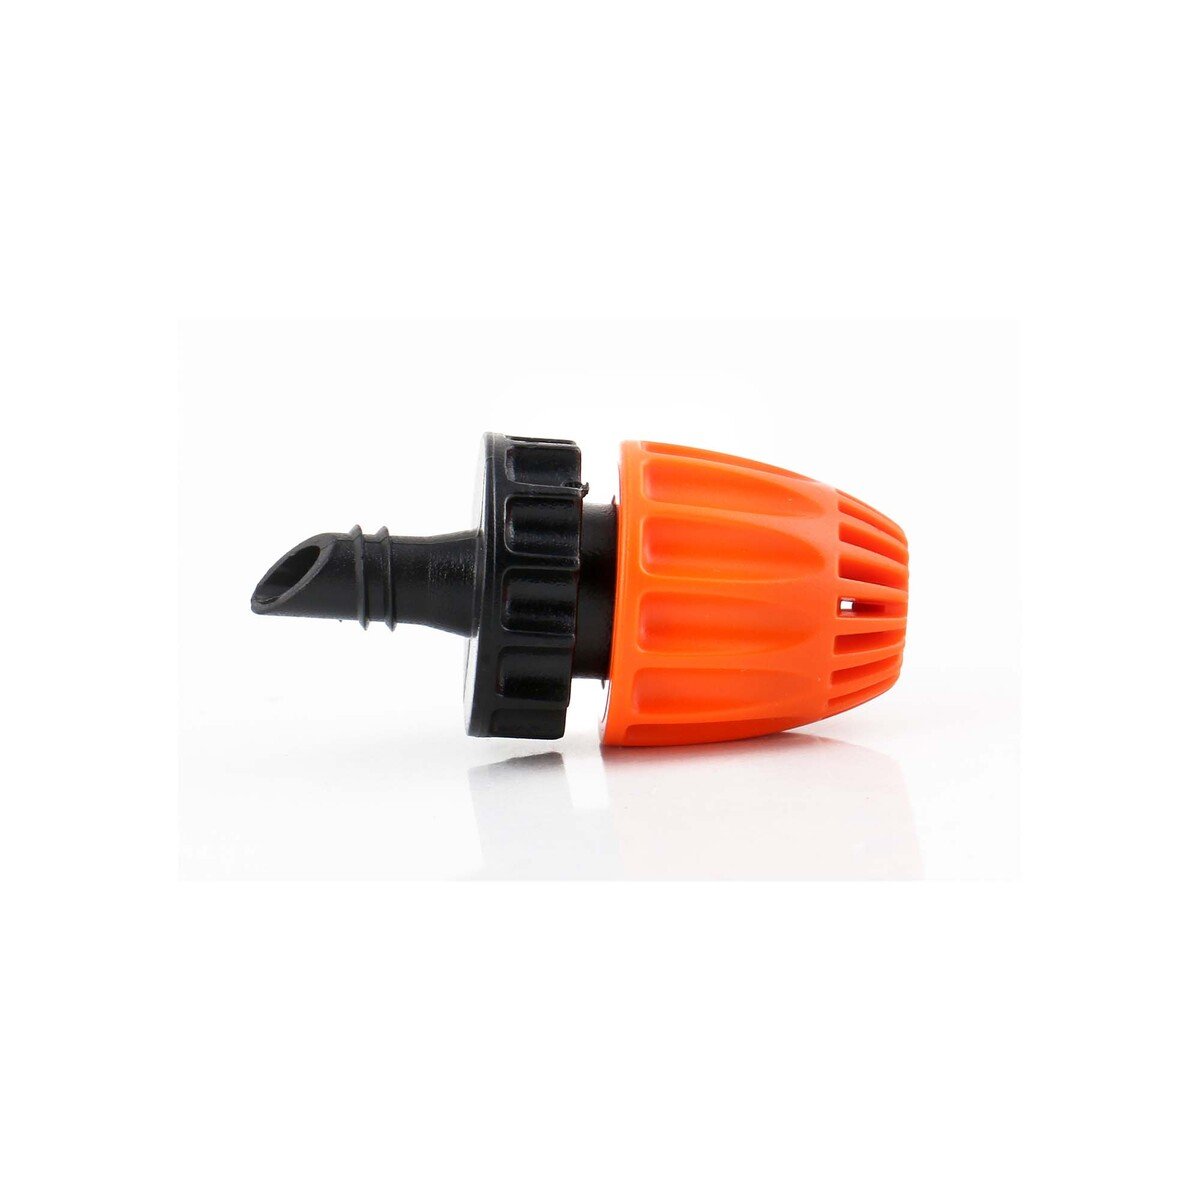 Claber 360° Micro Splinker, Black/Orange, 91256